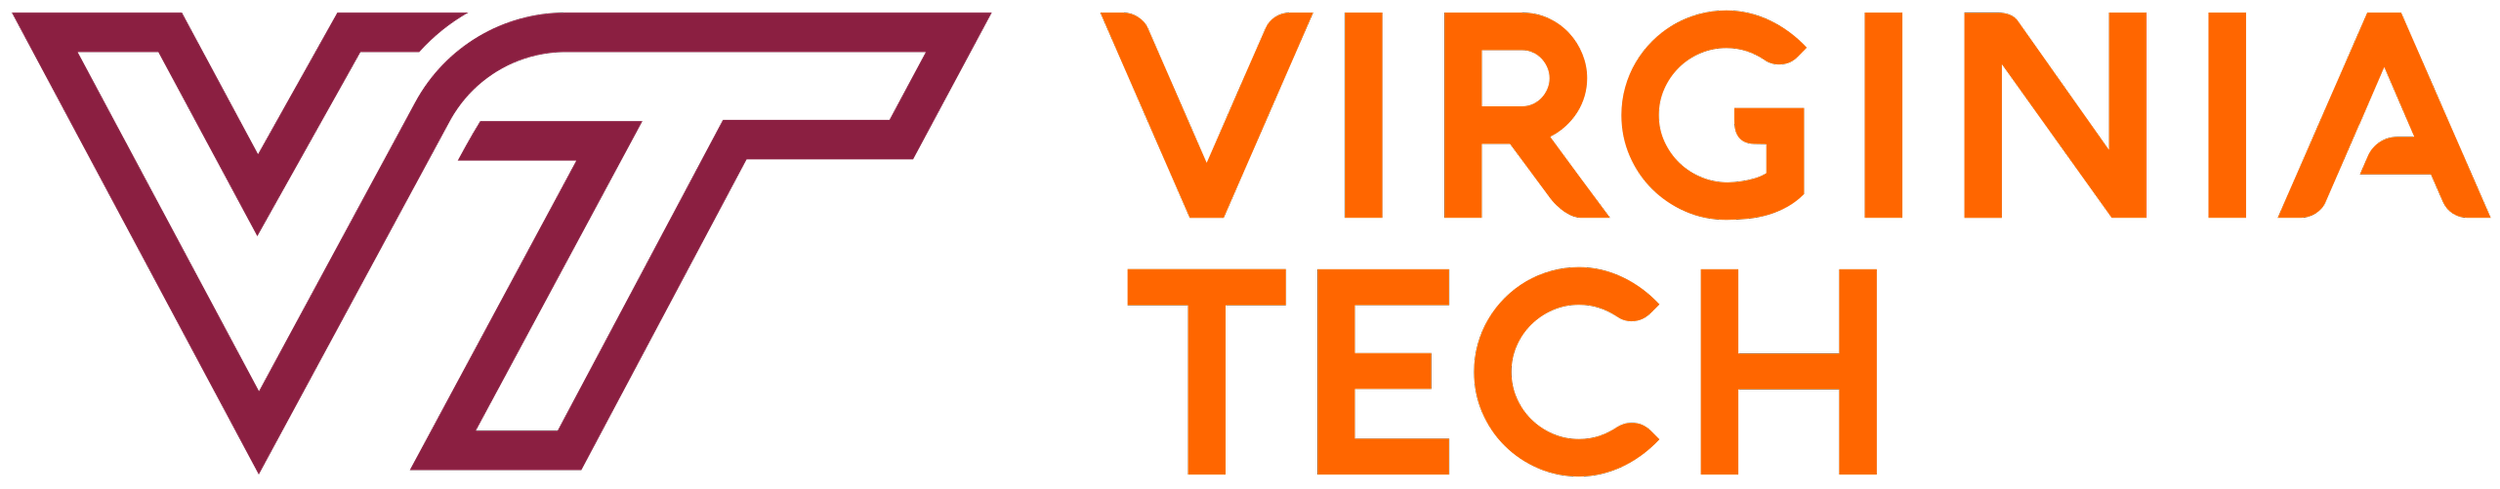 virginia_tech_logo.png